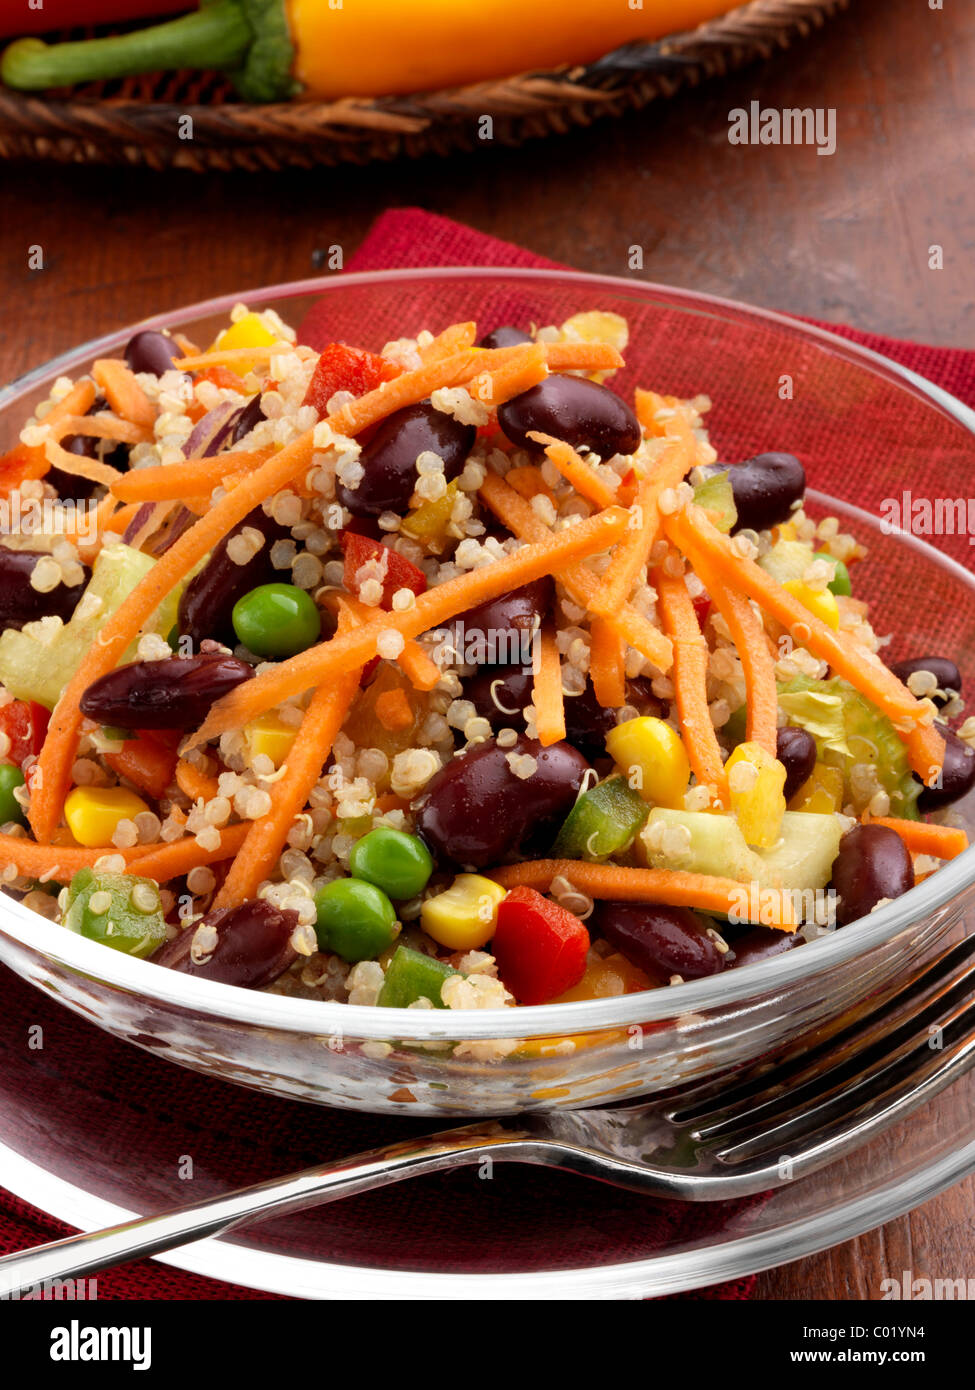 Chaque portion de Salade de quinoa aux pois maïs carottes poivrons rouge repas végétarien Haricots rouges Banque D'Images